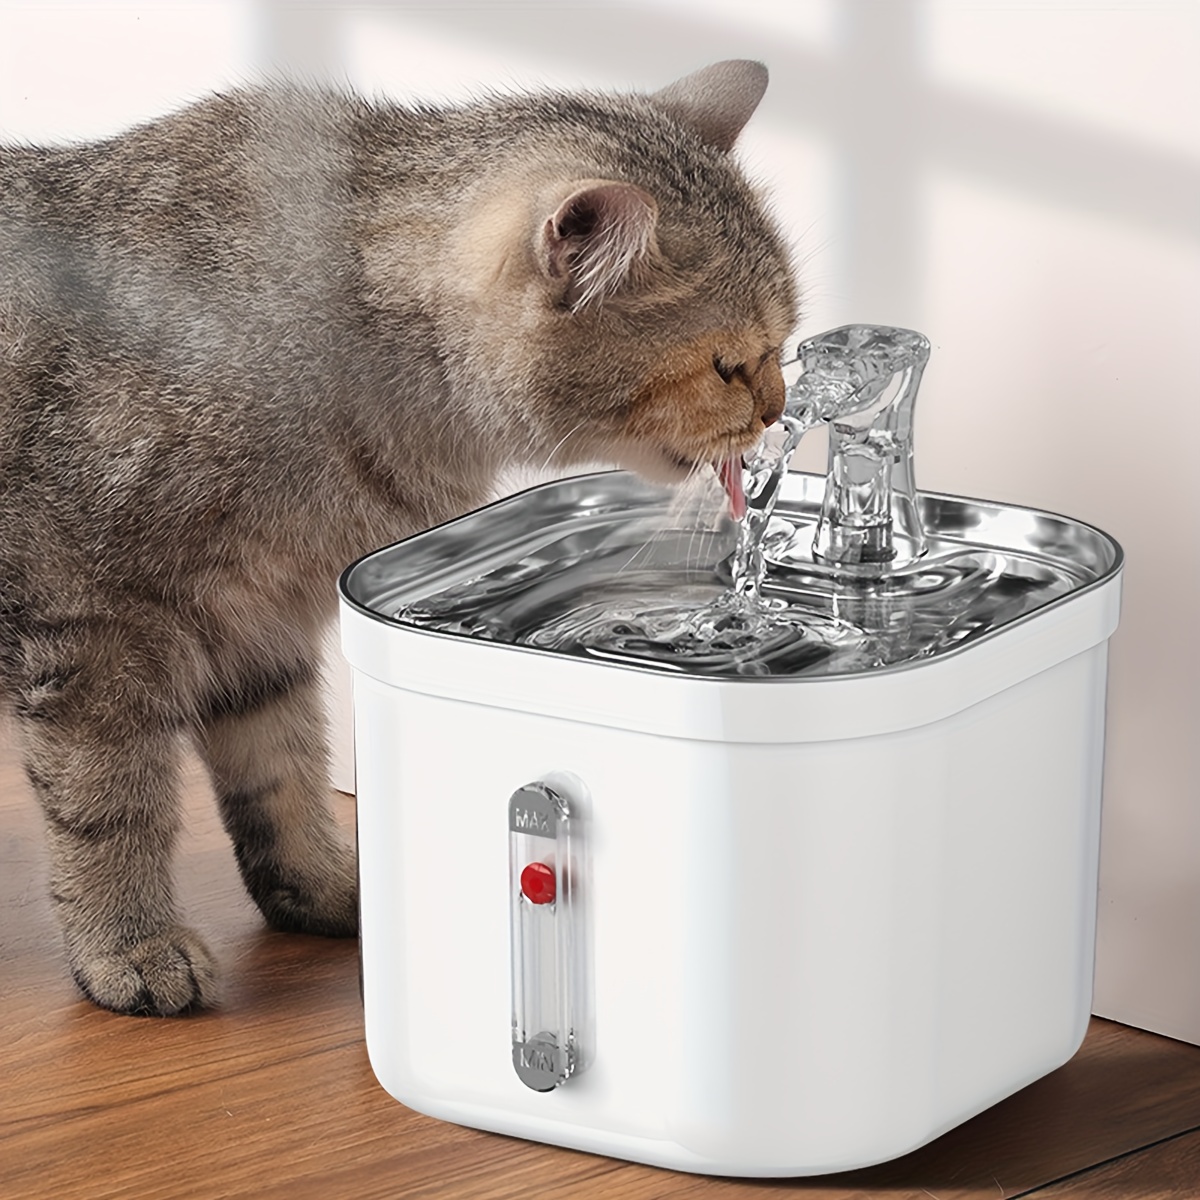 Universale Katzenbrunnen Pumpe - mit Wasserstandssensor